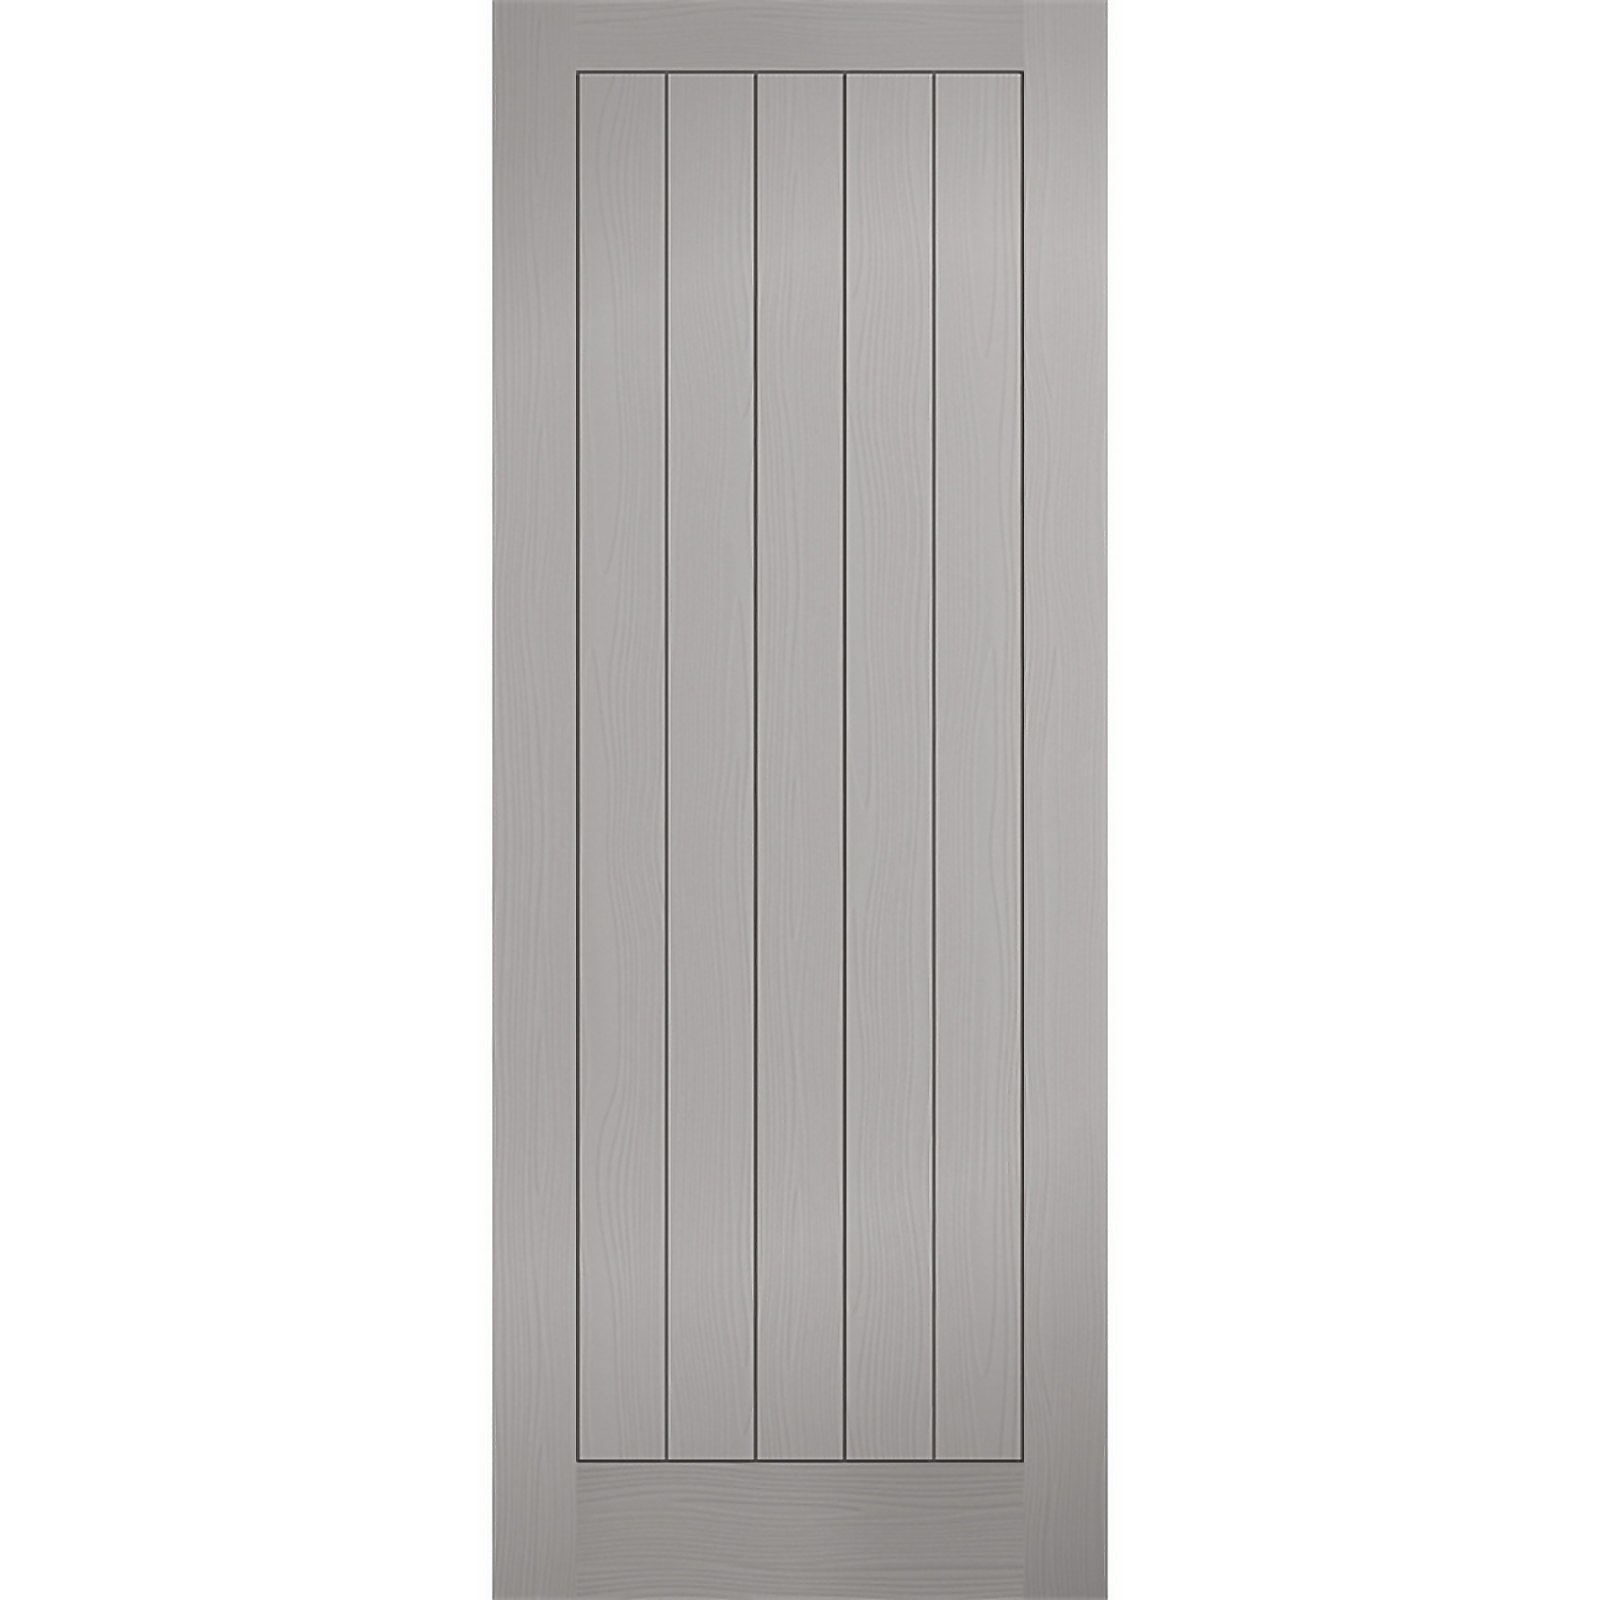 Photo of Textured - Vertical Panel - Grey Internal Door - 1981 X 762 X 35mm